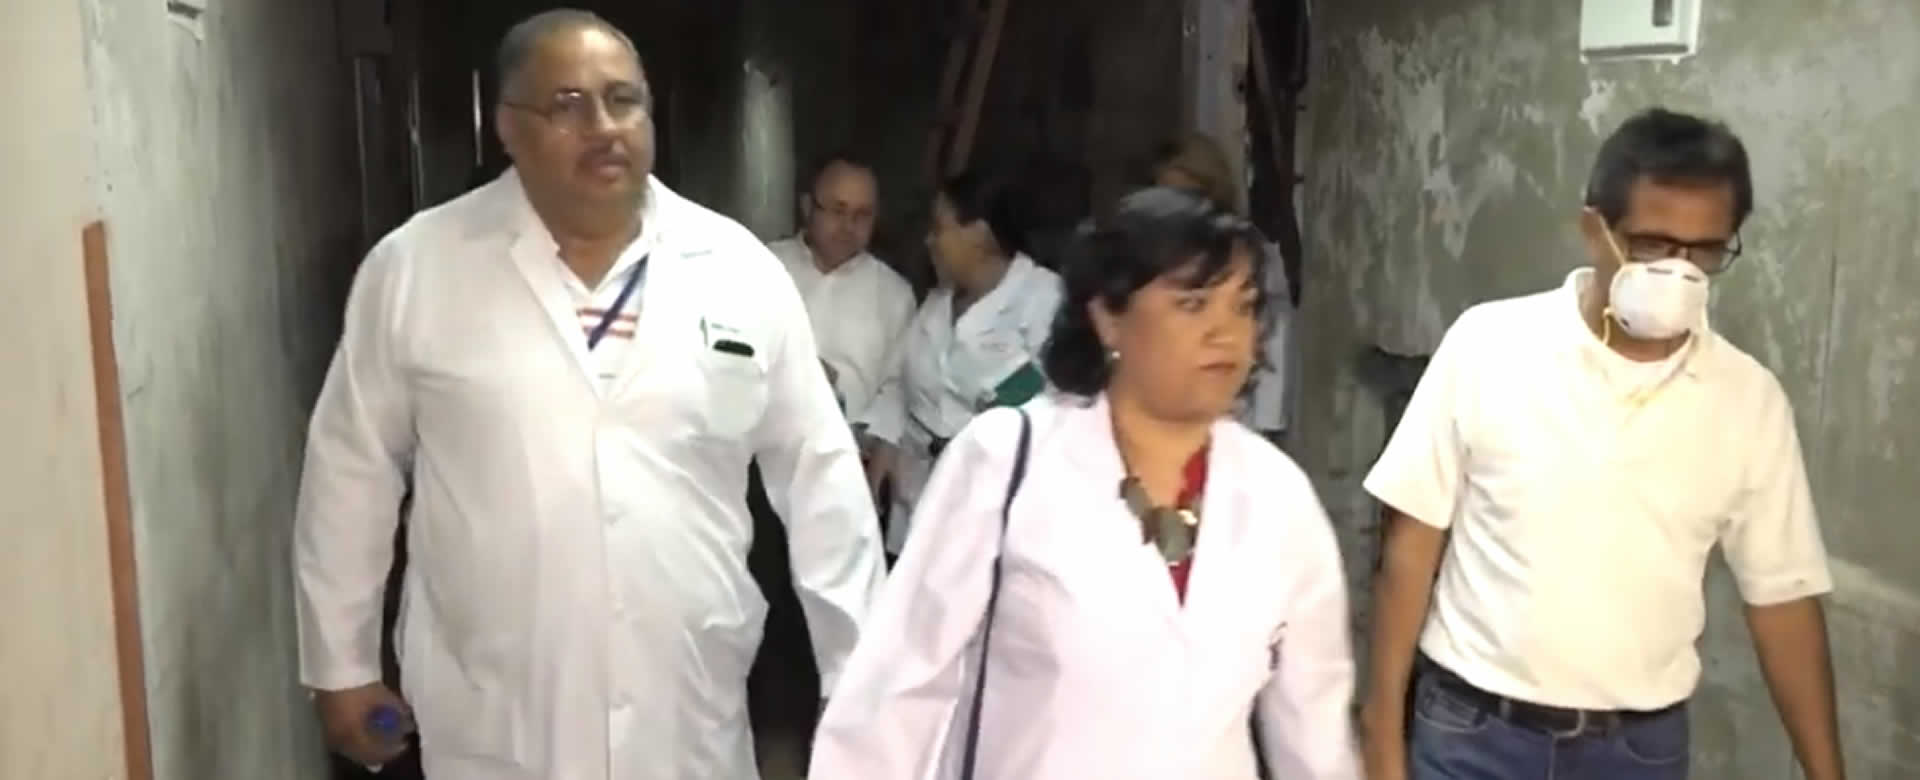 Inicia remodelación del área quirúrgica en el Hospital Antonio Lenin Fonseca